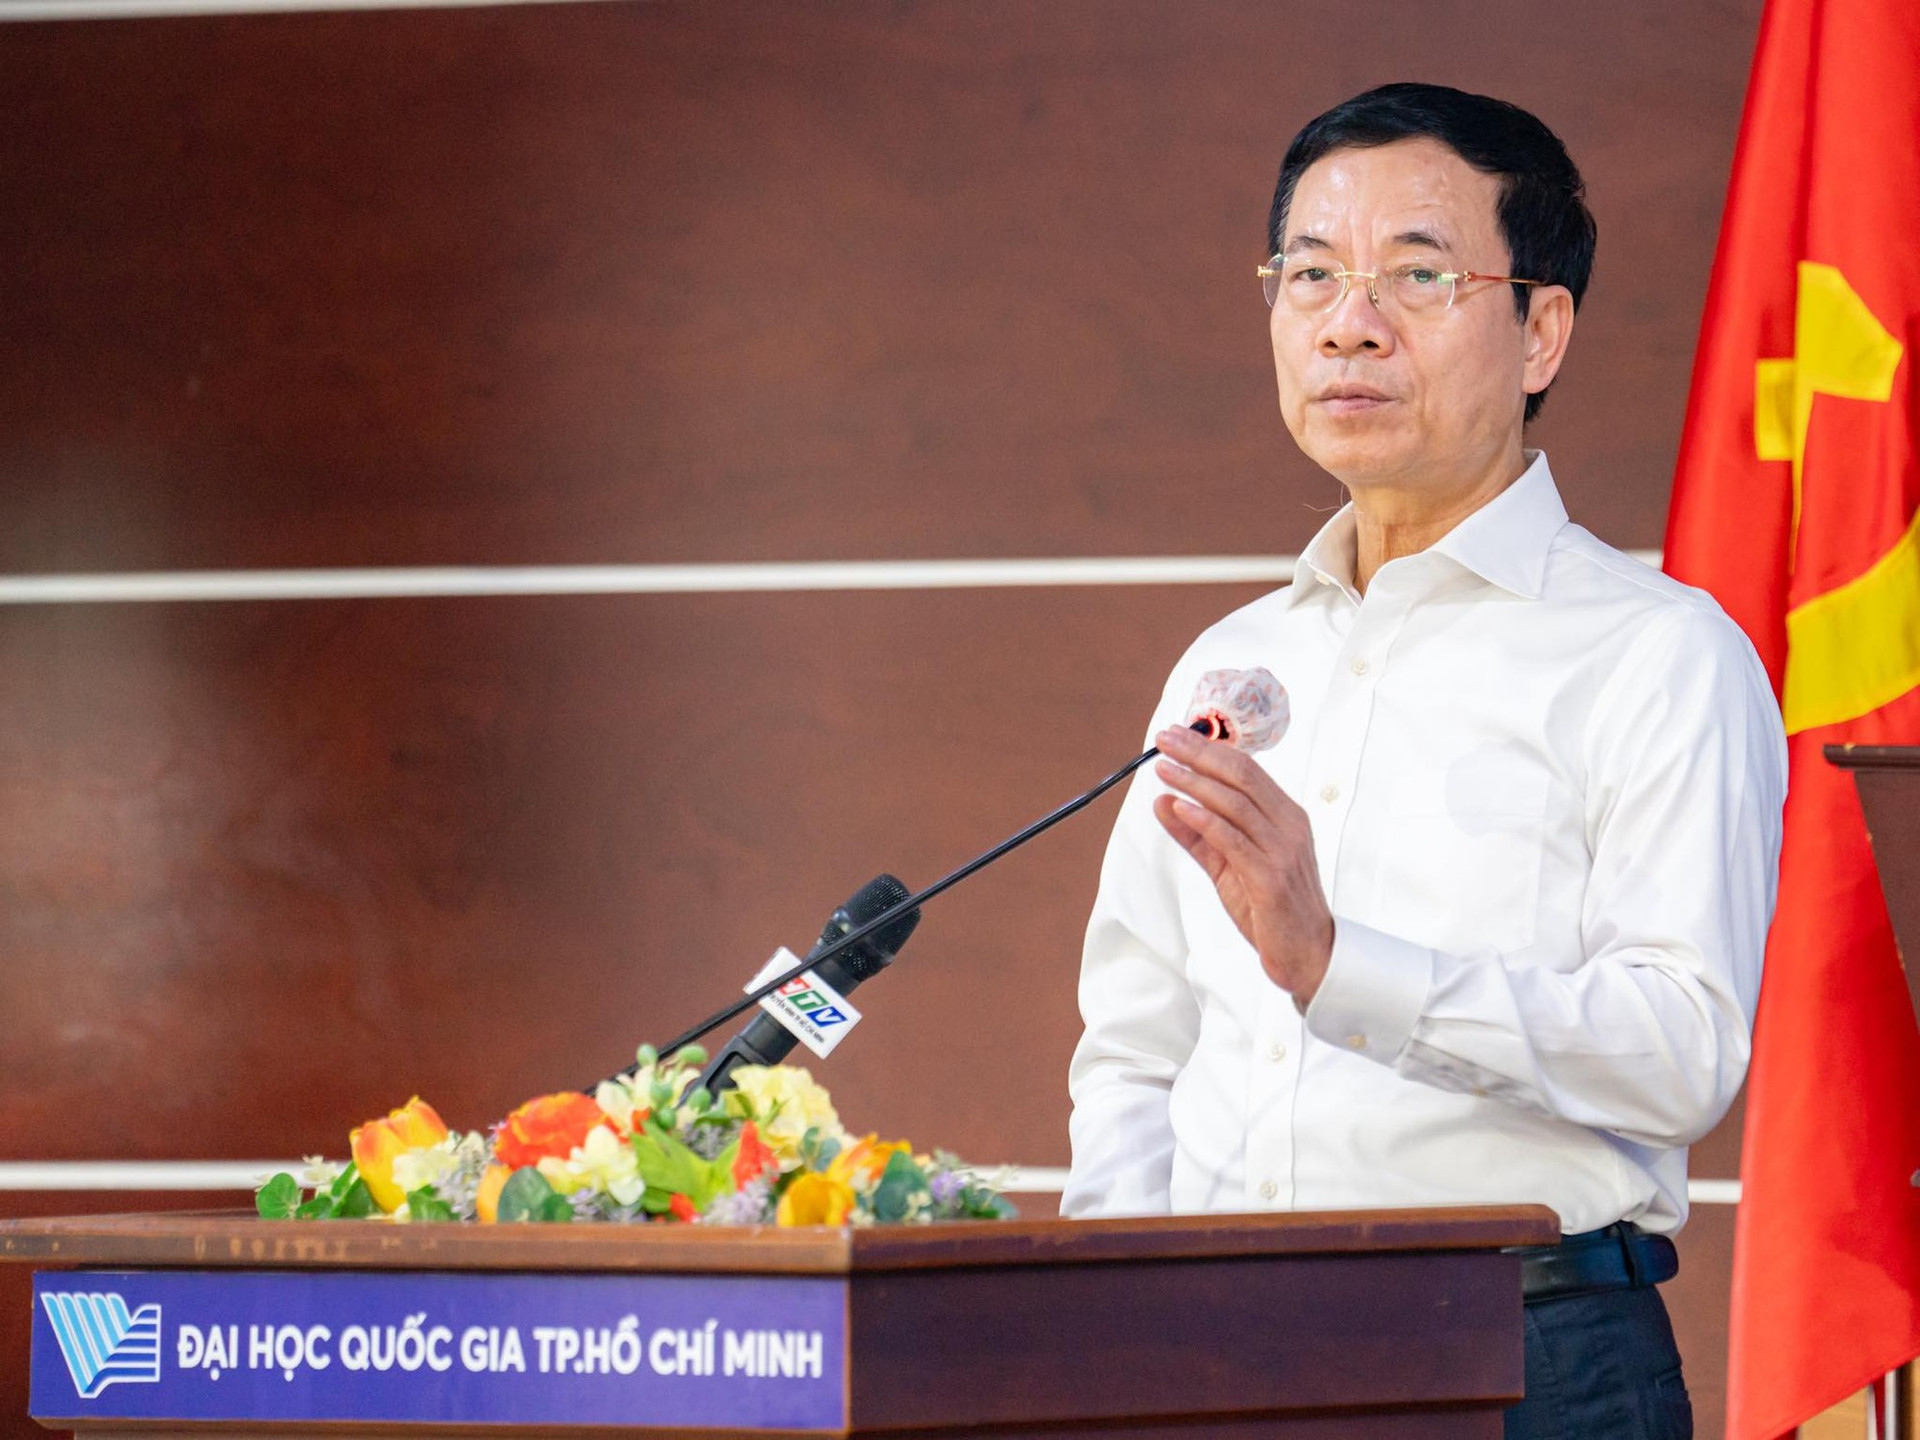 Bộ trưởng Nguyễn Mạnh Hùng: 